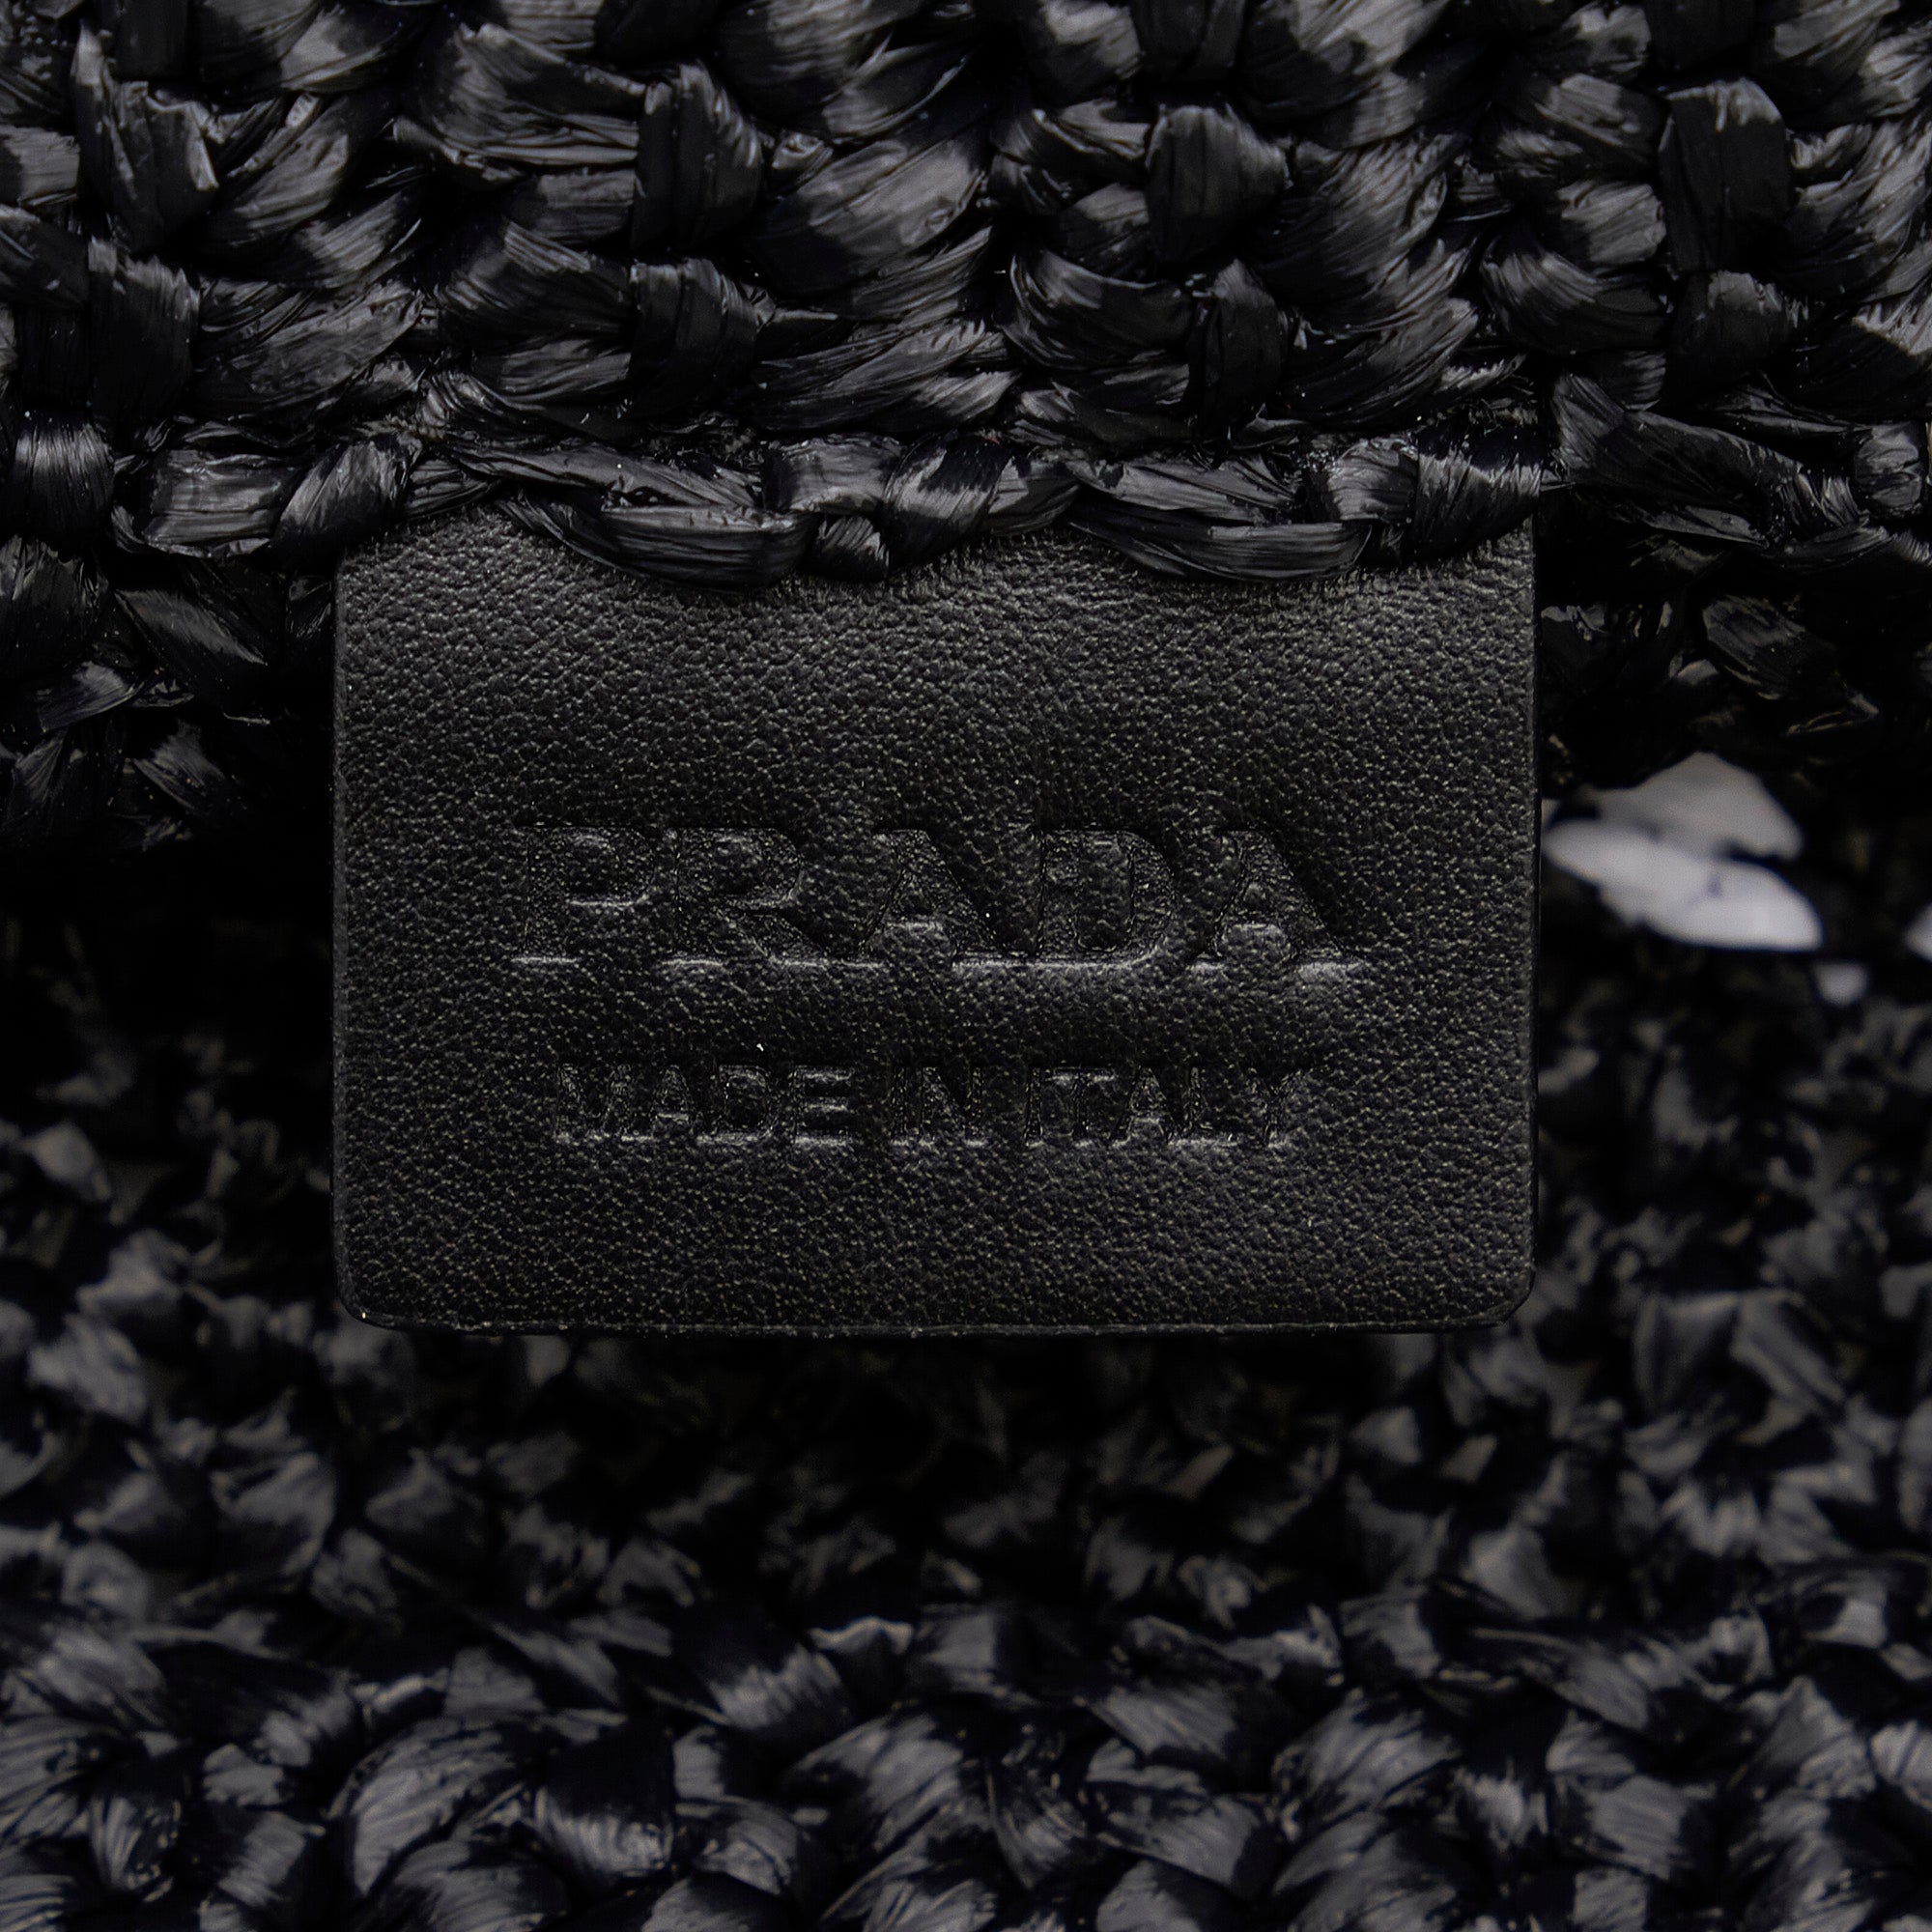 Black Prada Raffia Logo Tote - Designer Revival